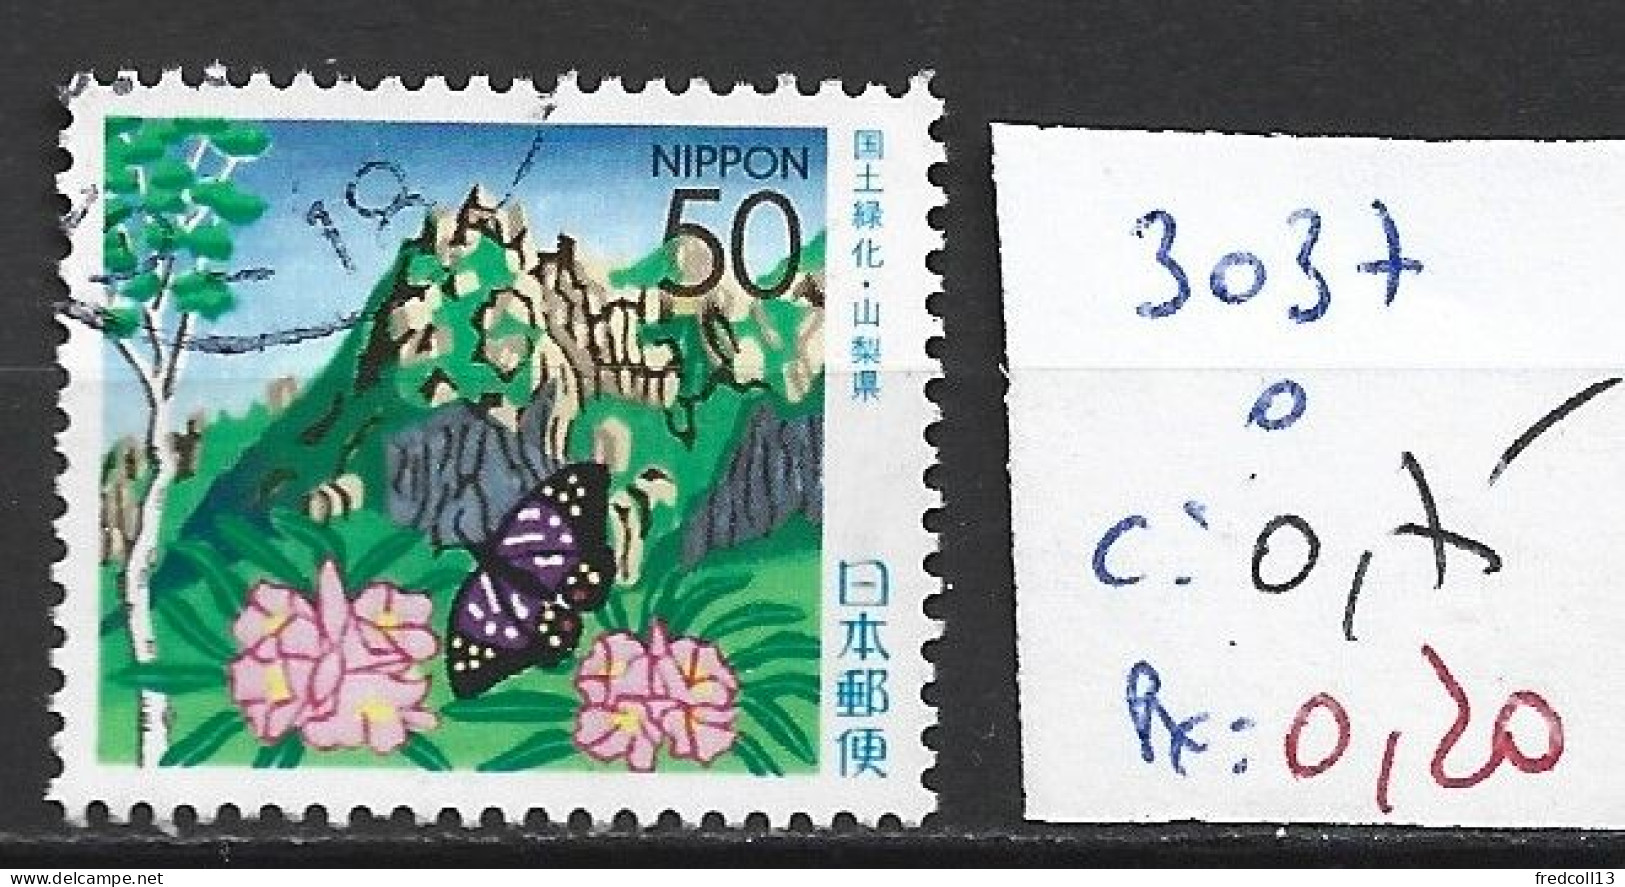 JAPON 3037 Oblitéré Côte 0.75 € - Used Stamps